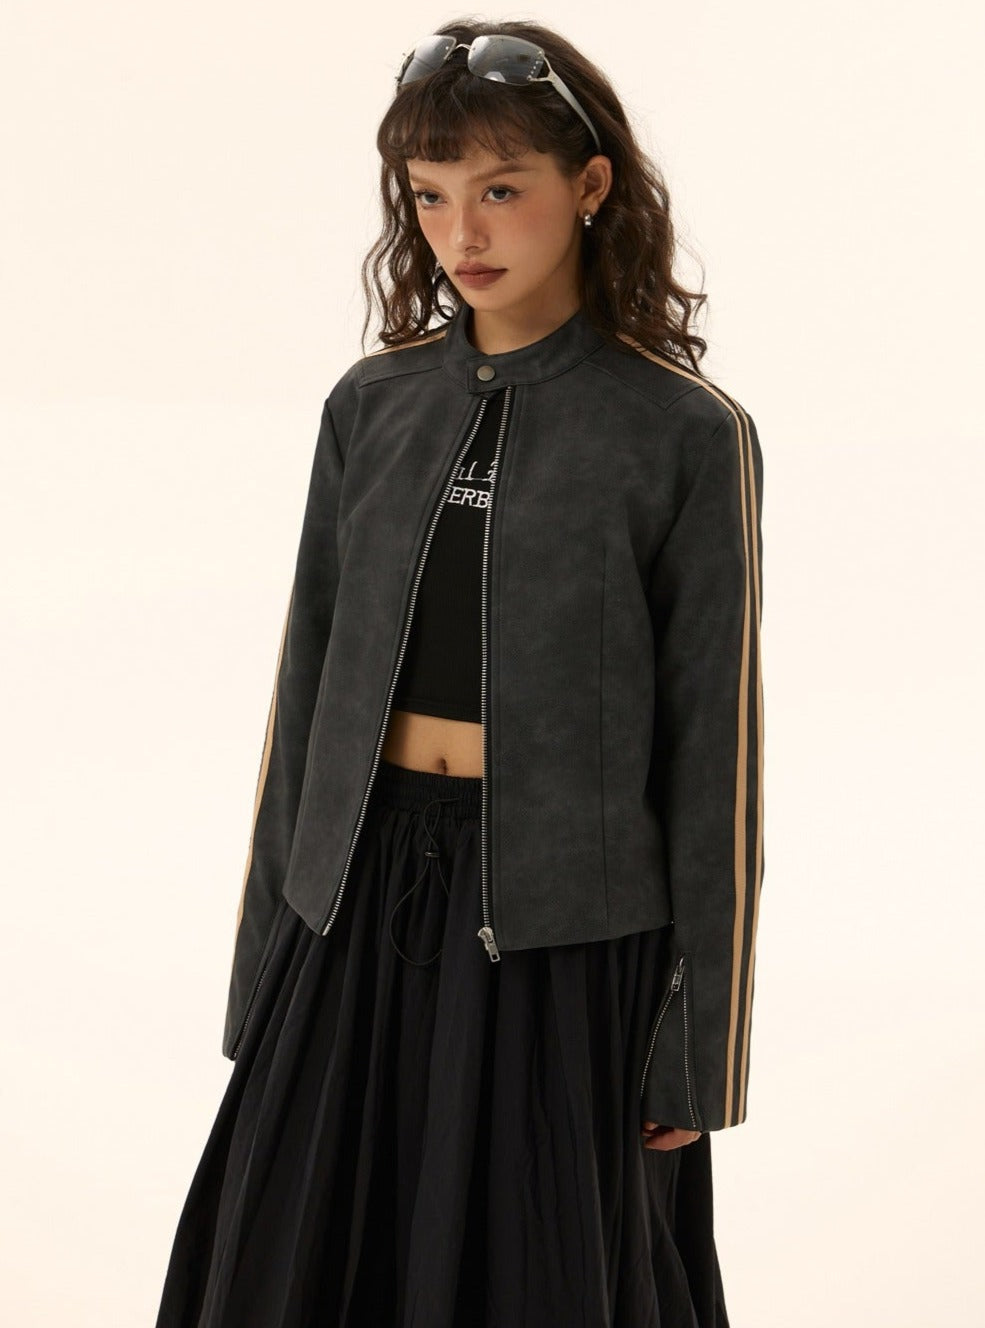 Style short leather jacket